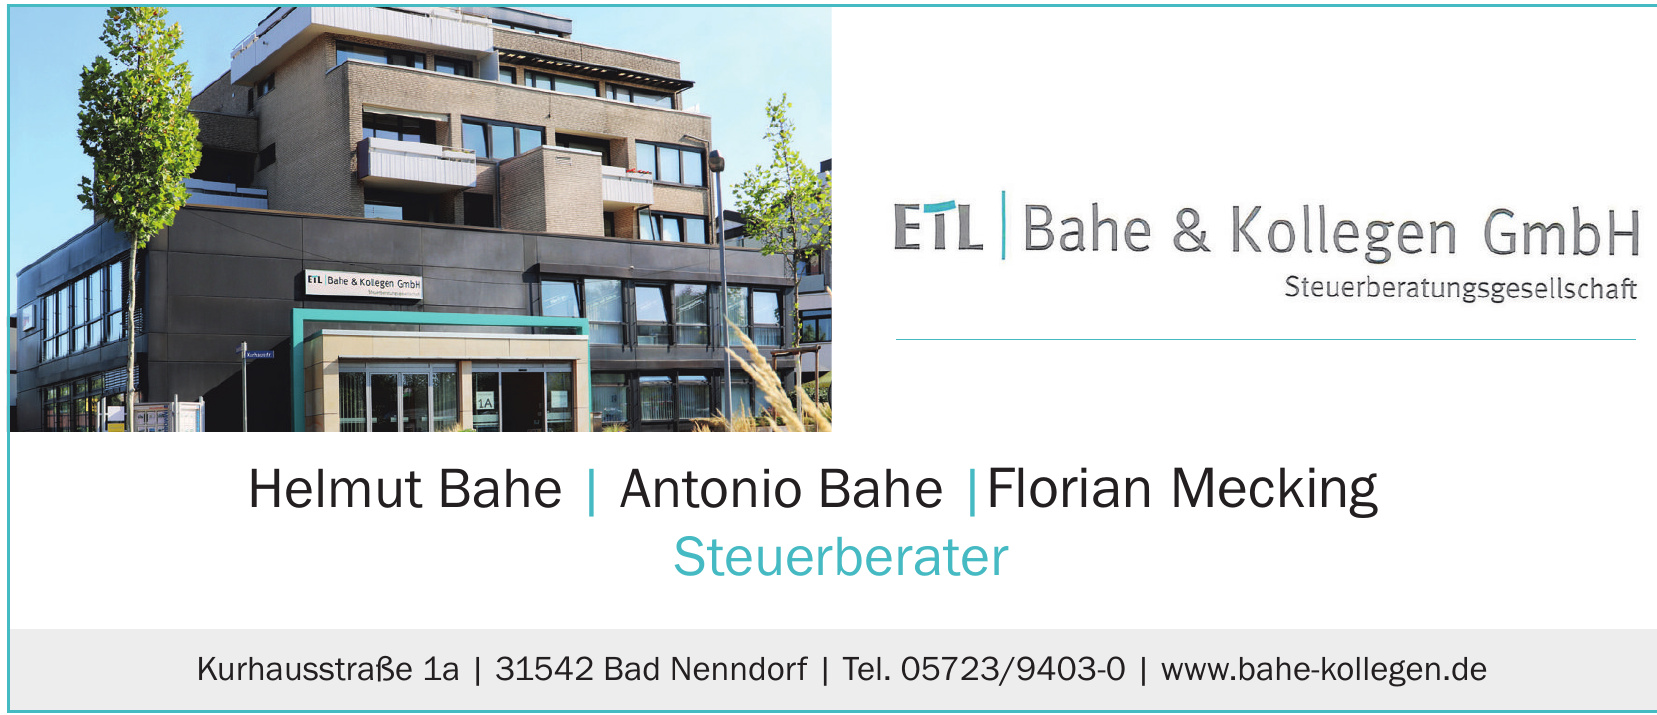 ETL Bahe & Kollegen GmbH